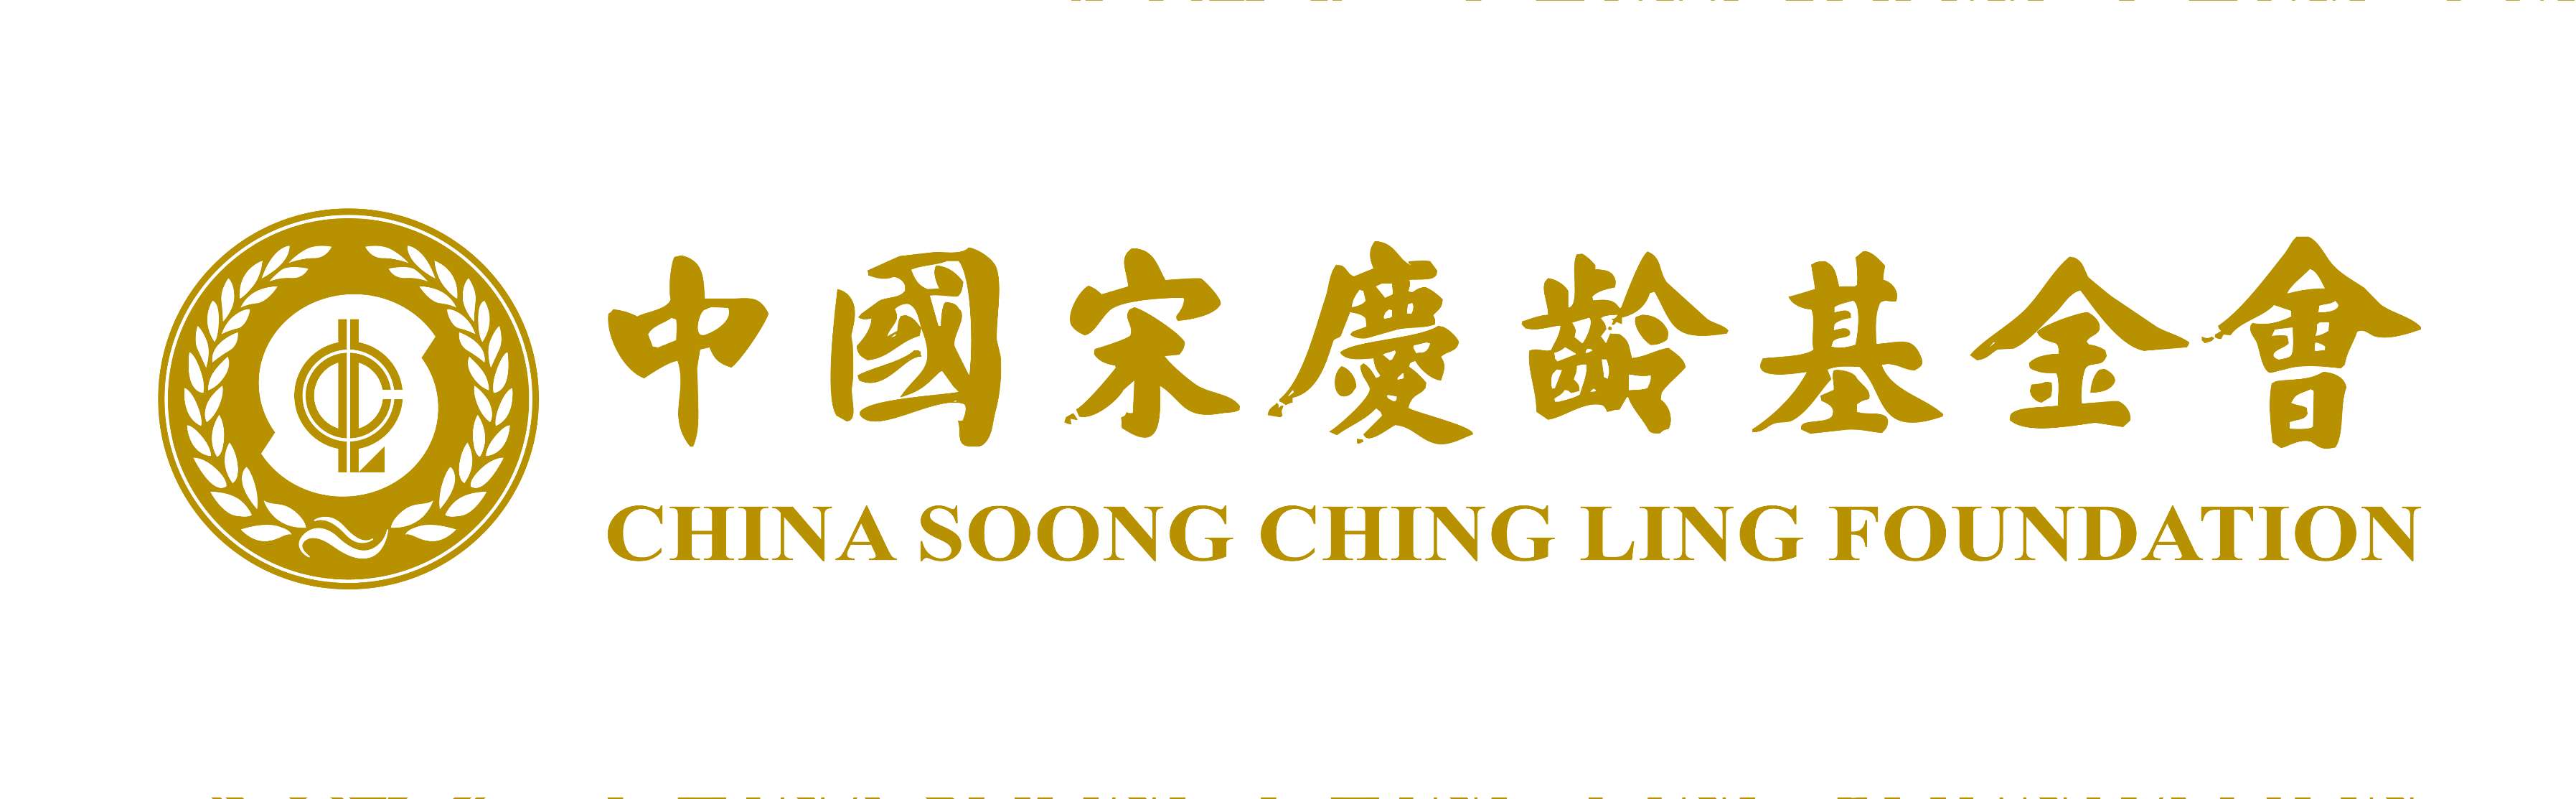 Ching chong ling long